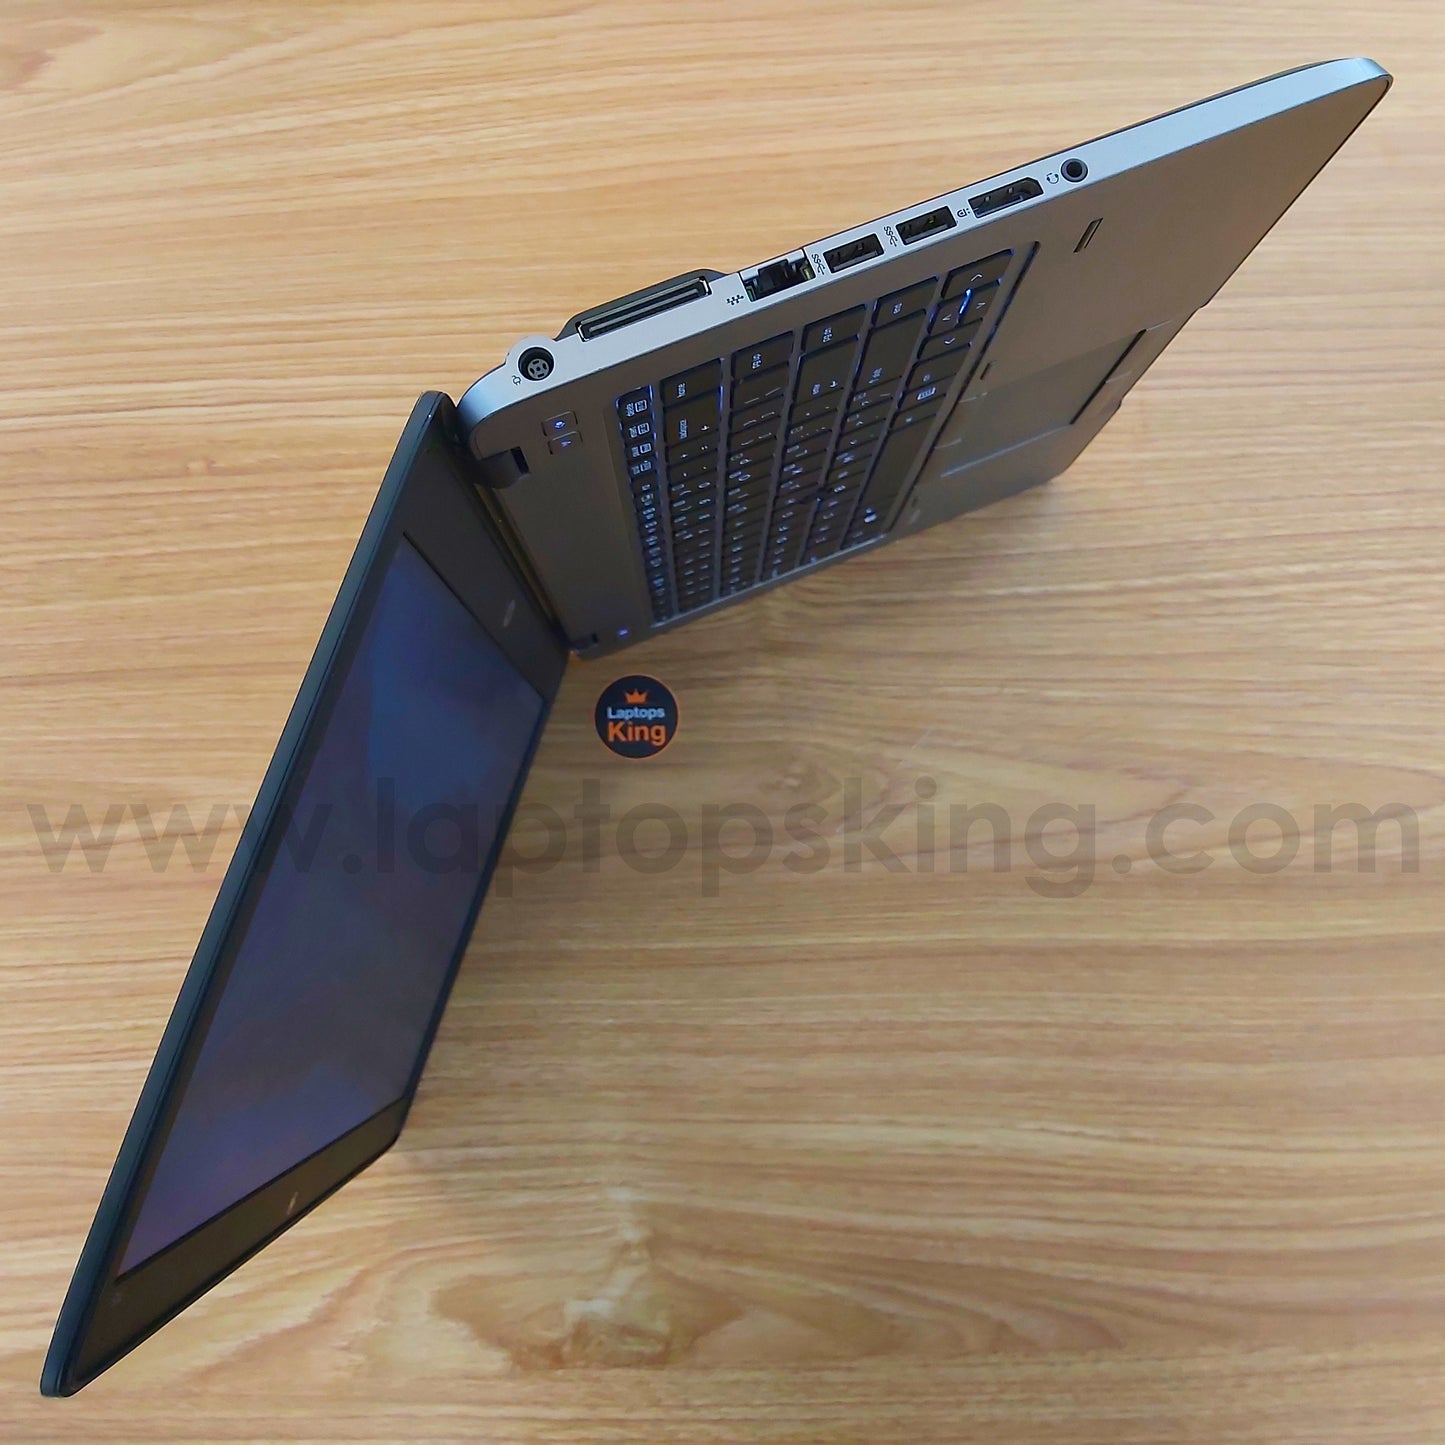 Hp EliteBook 745 AMD A8 Pro-7150b 7th Gen Radeon R5 Laptop Offer (Open Box)